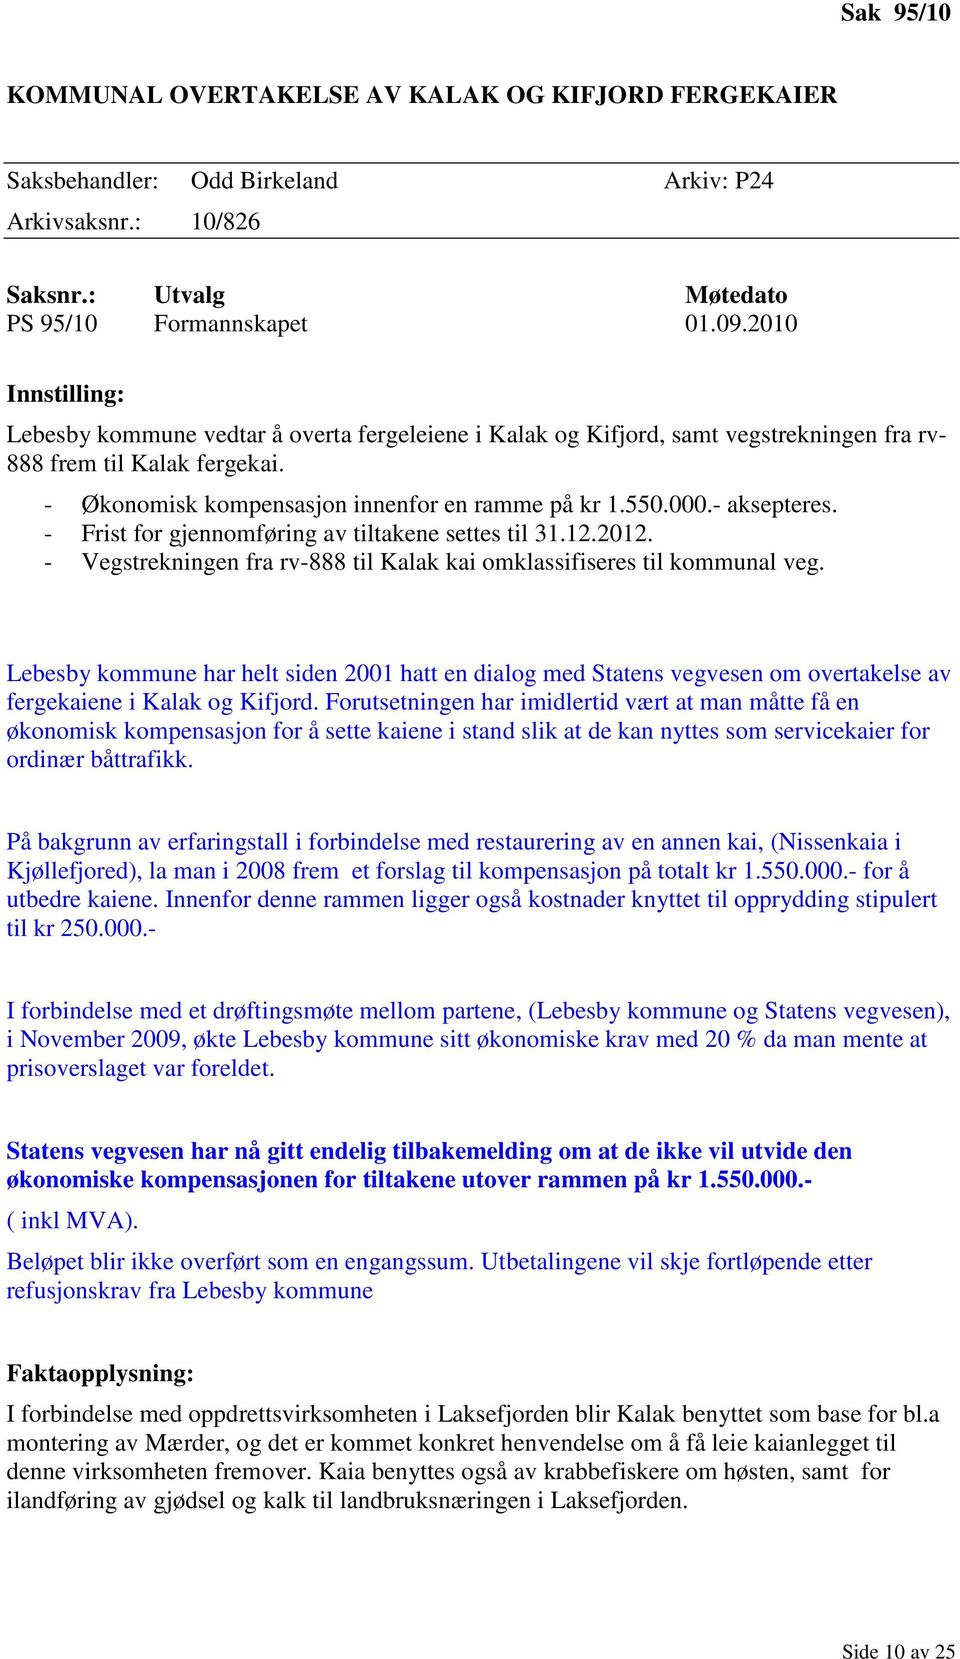 - aksepteres. - Frist for gjennomføring av tiltakene settes til 31.12.2012. - Vegstrekningen fra rv-888 til Kalak kai omklassifiseres til kommunal veg.